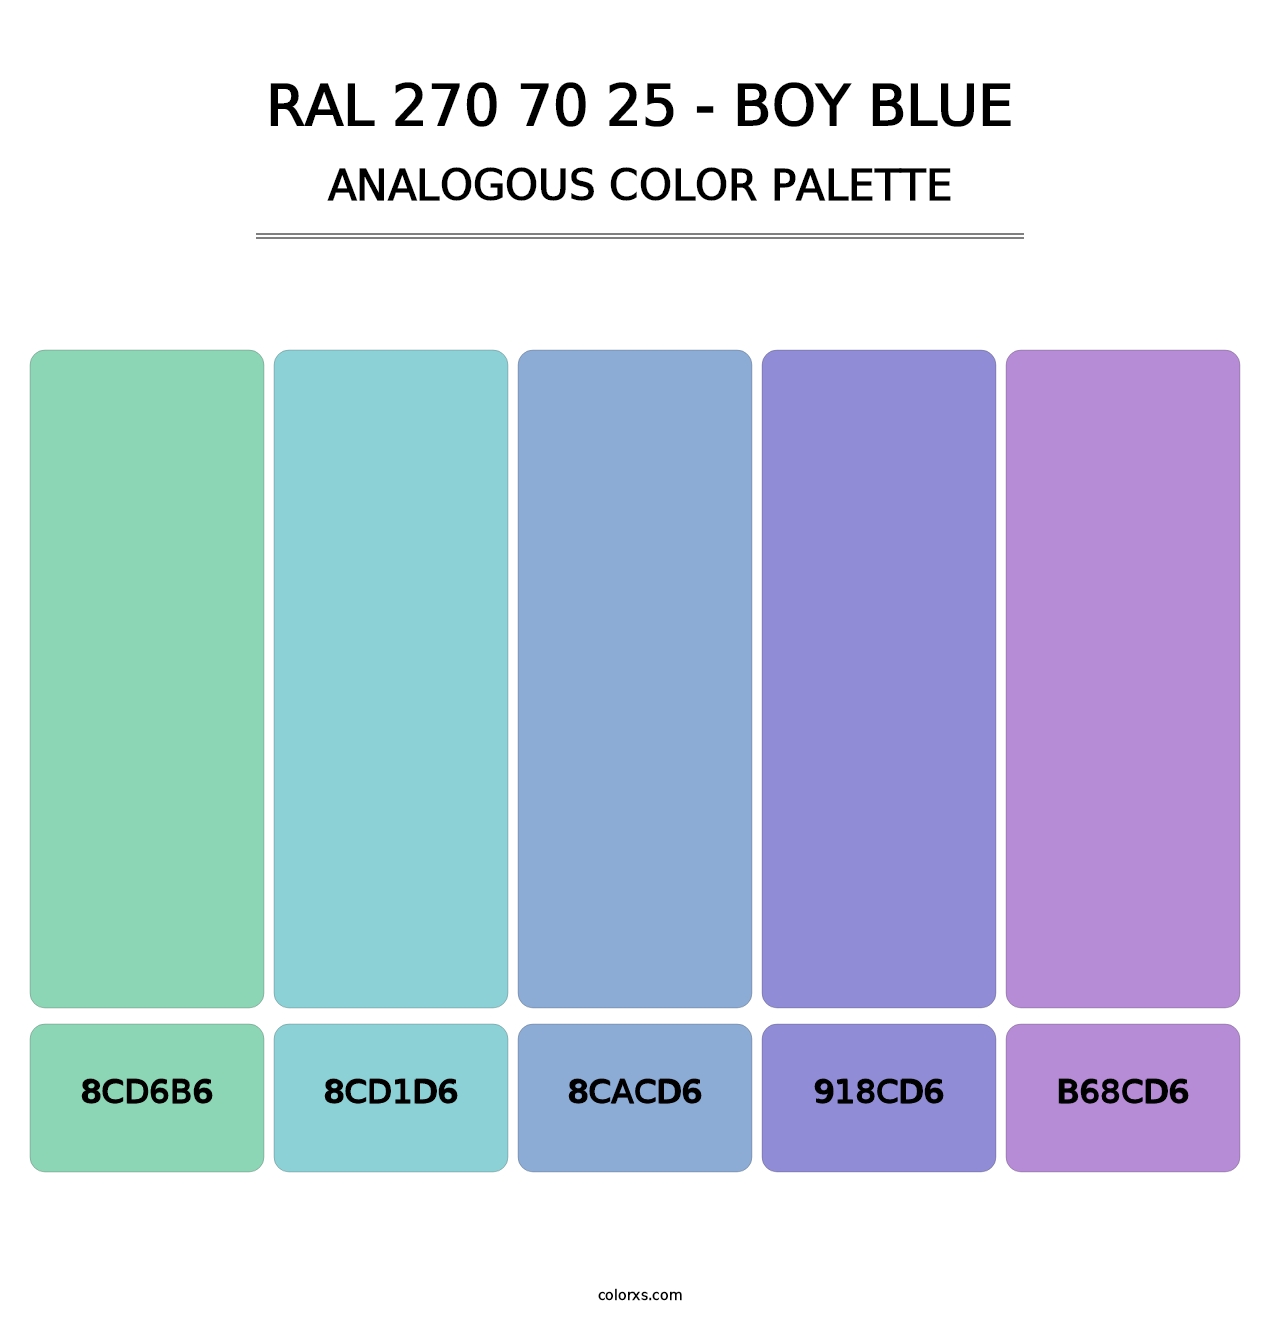 RAL 270 70 25 - Boy Blue - Analogous Color Palette